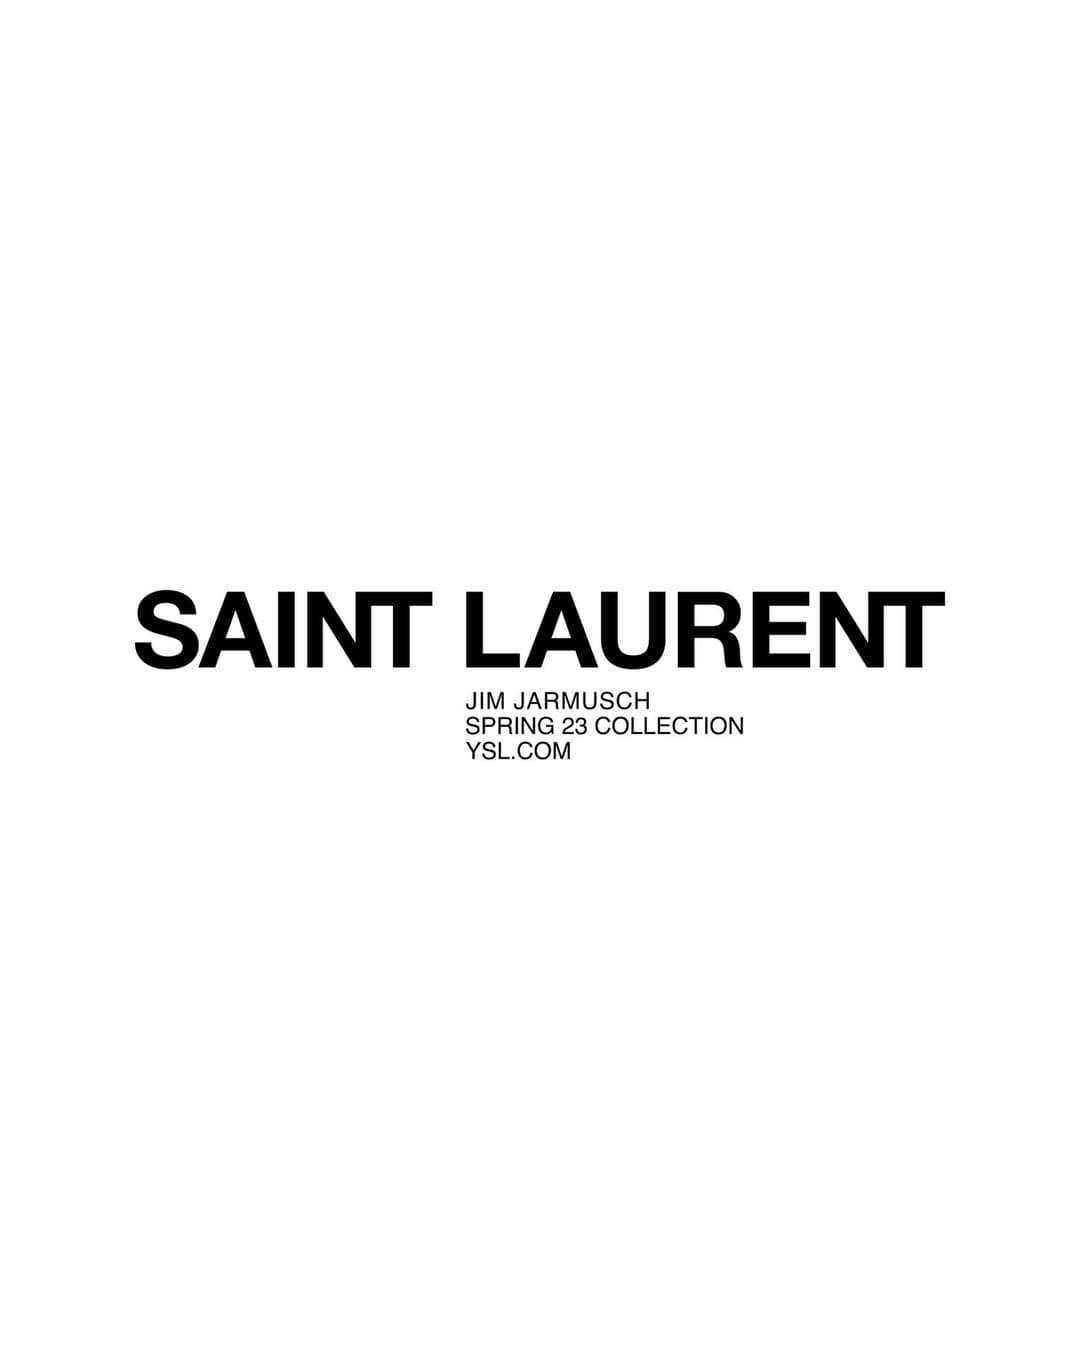 Saint Laurent Winter 2023 Directors Cut